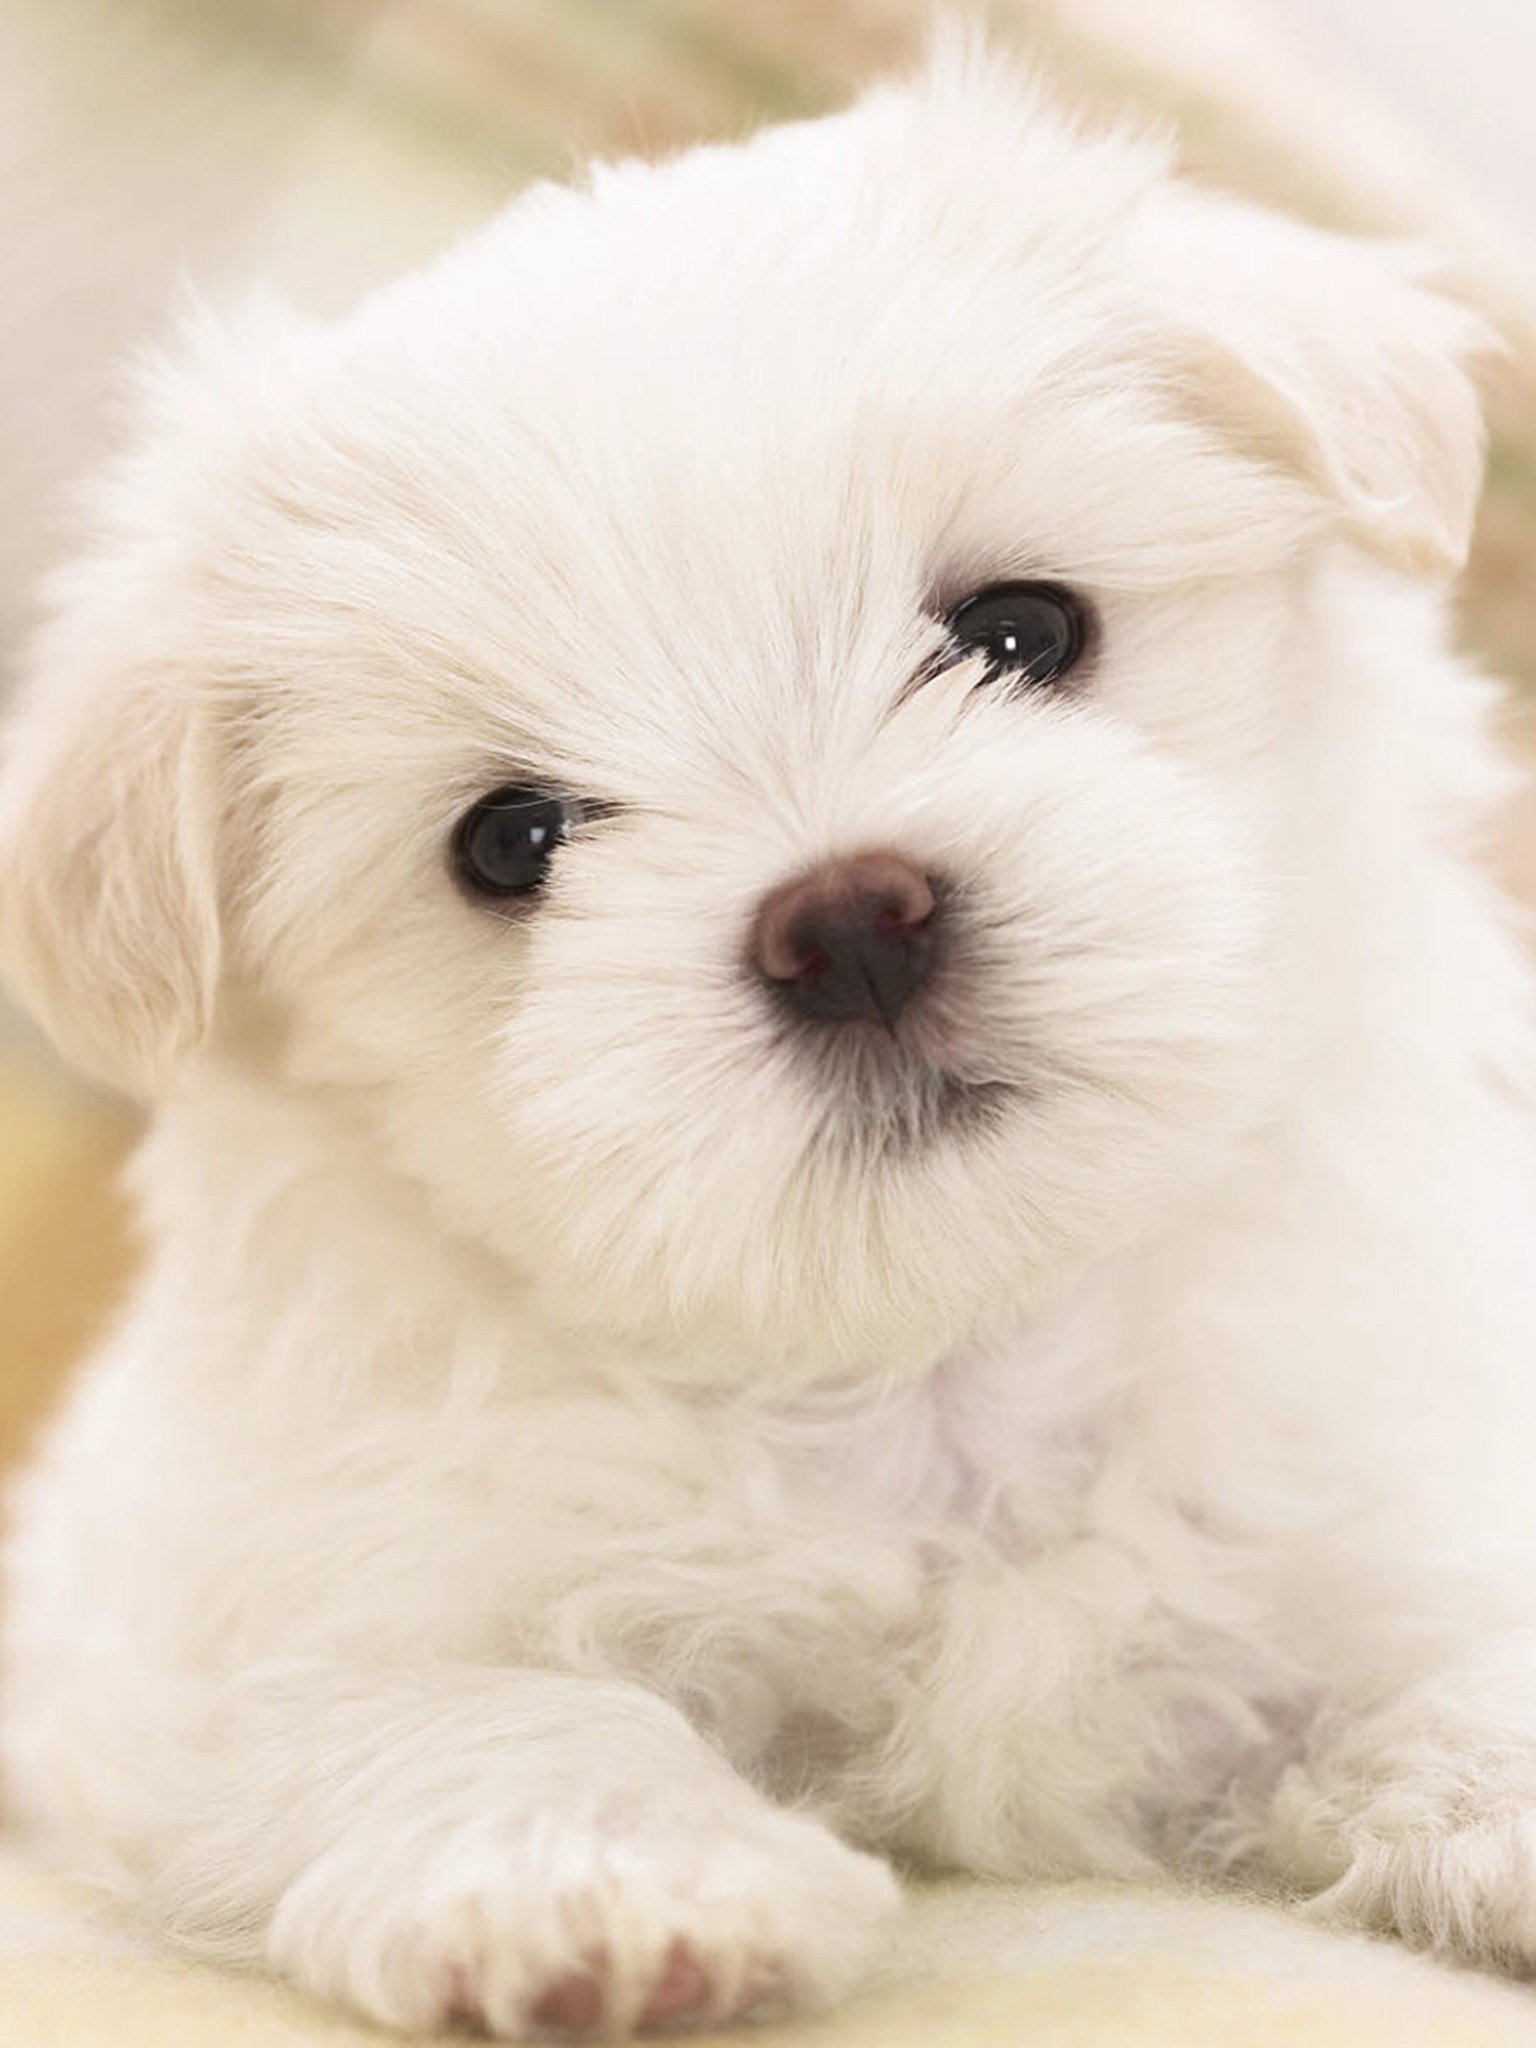 سگ کوچولوی ناز پشمالو به رنگ سفید در قاب هنری